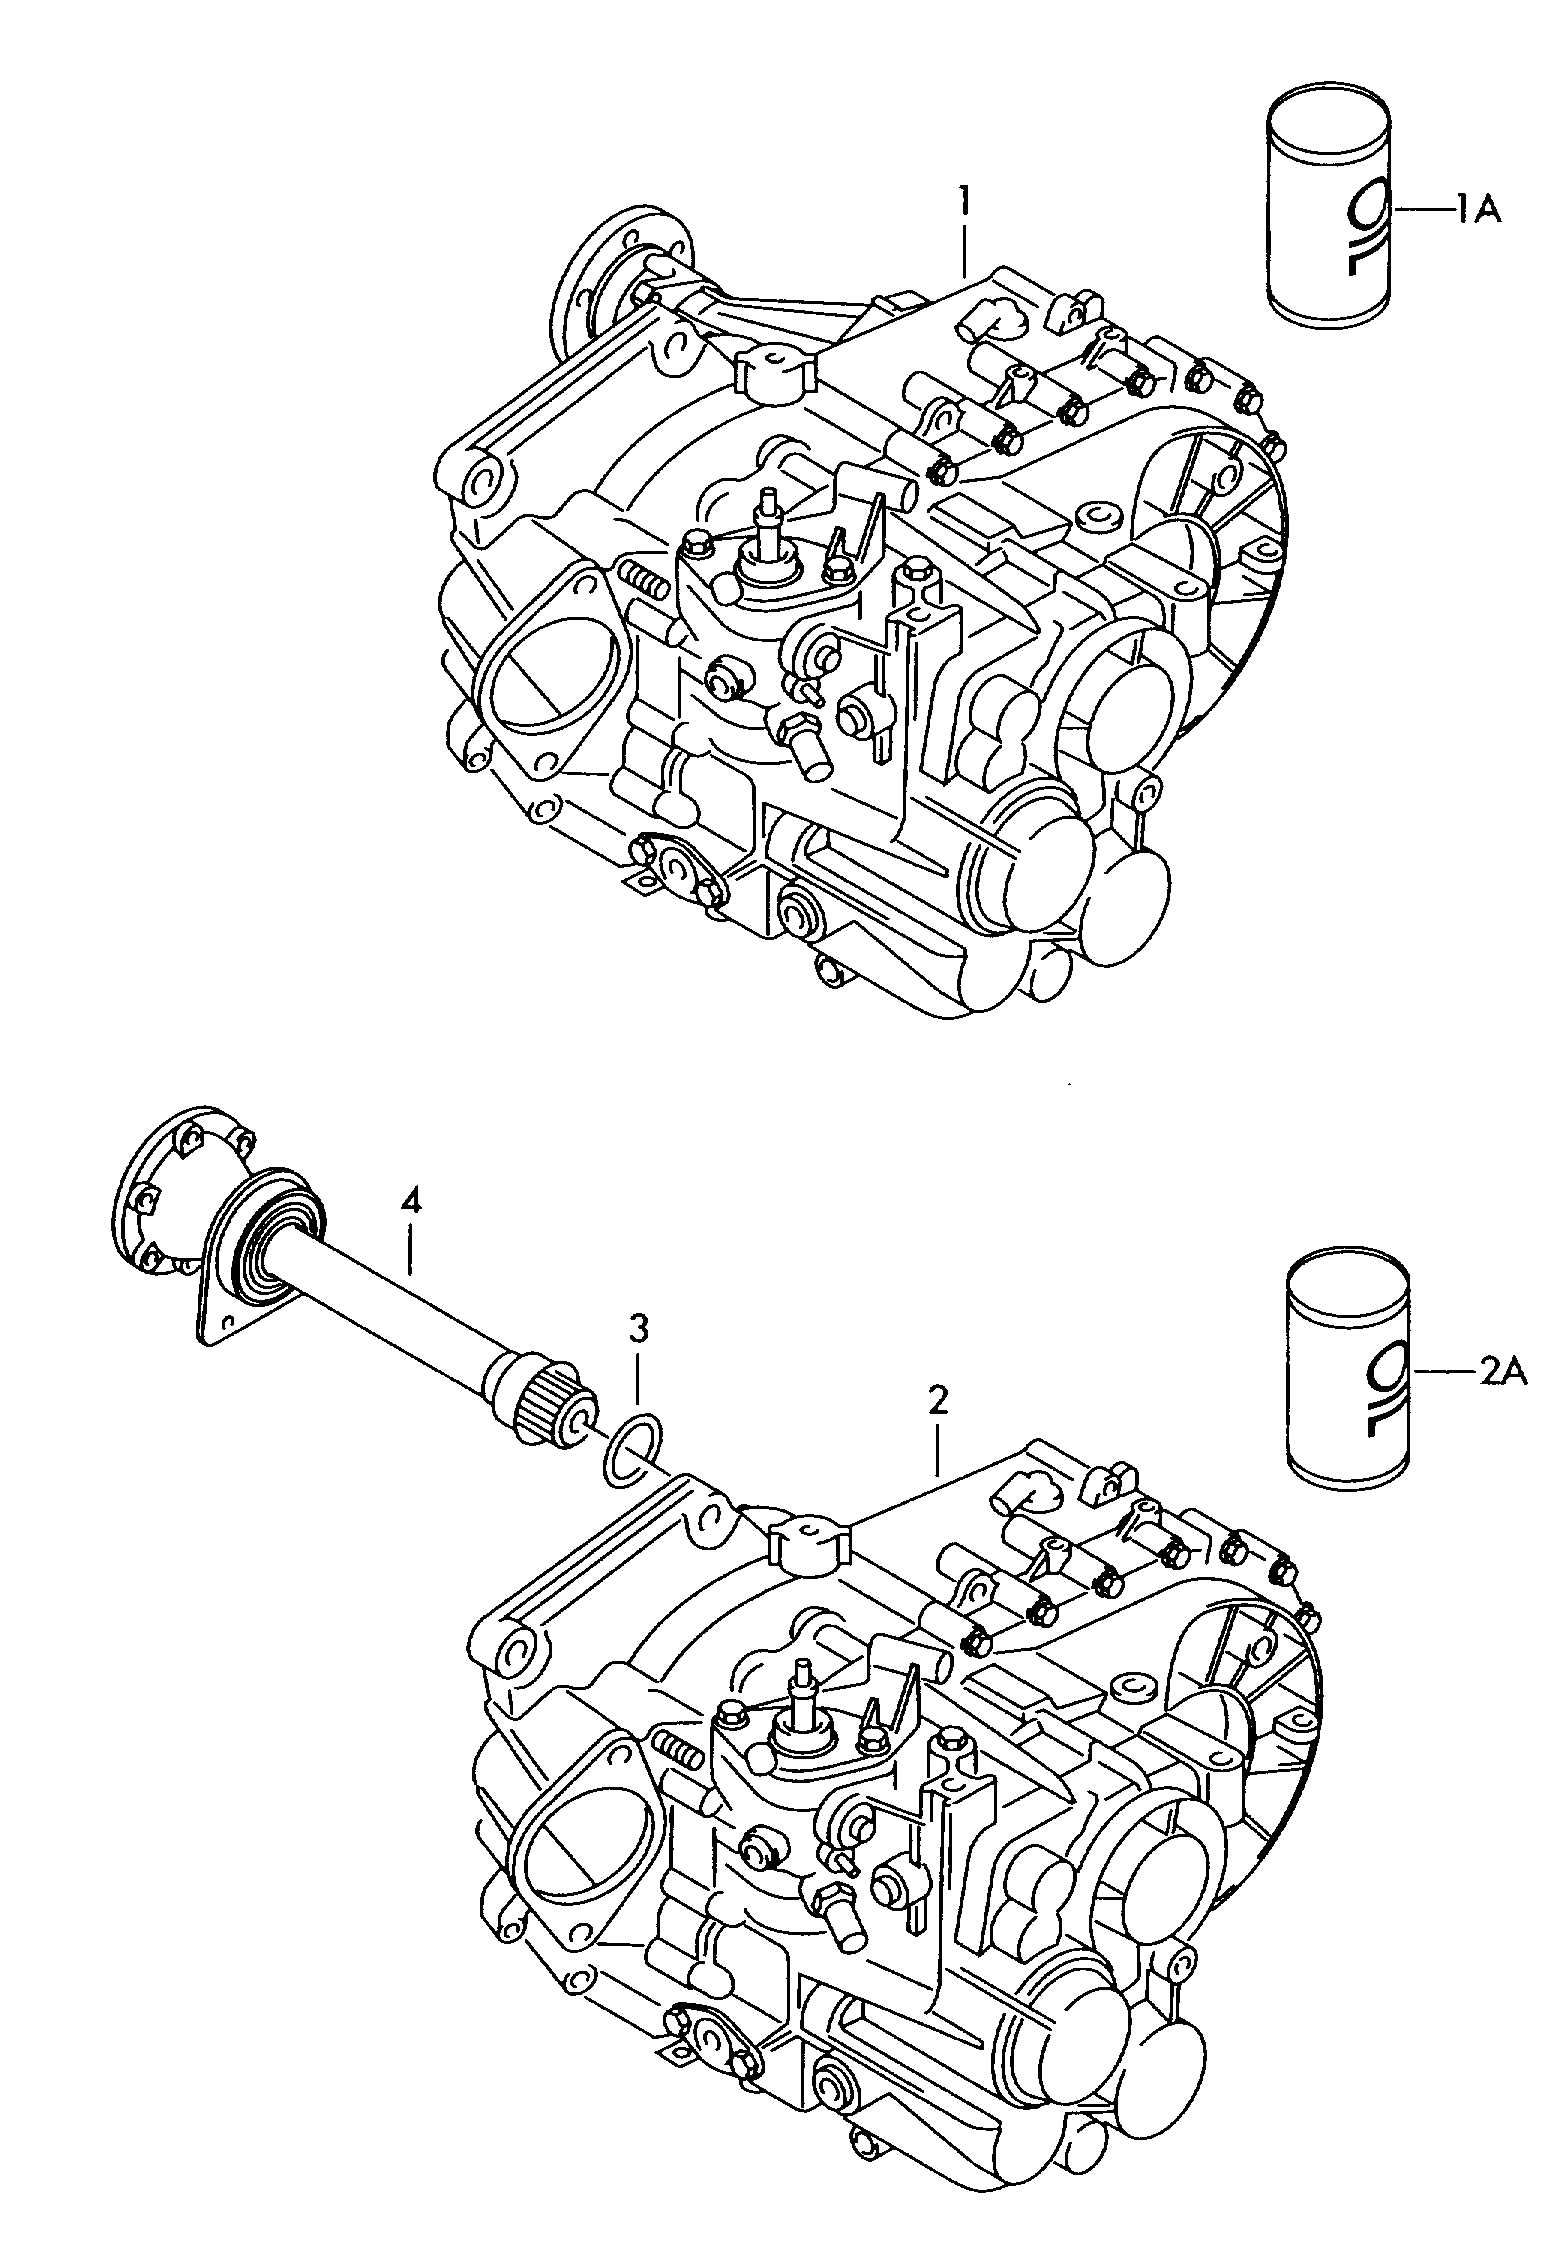 6-speed manual transmission dėl Volkswagen Sharan Sharan (2001 - 2002)